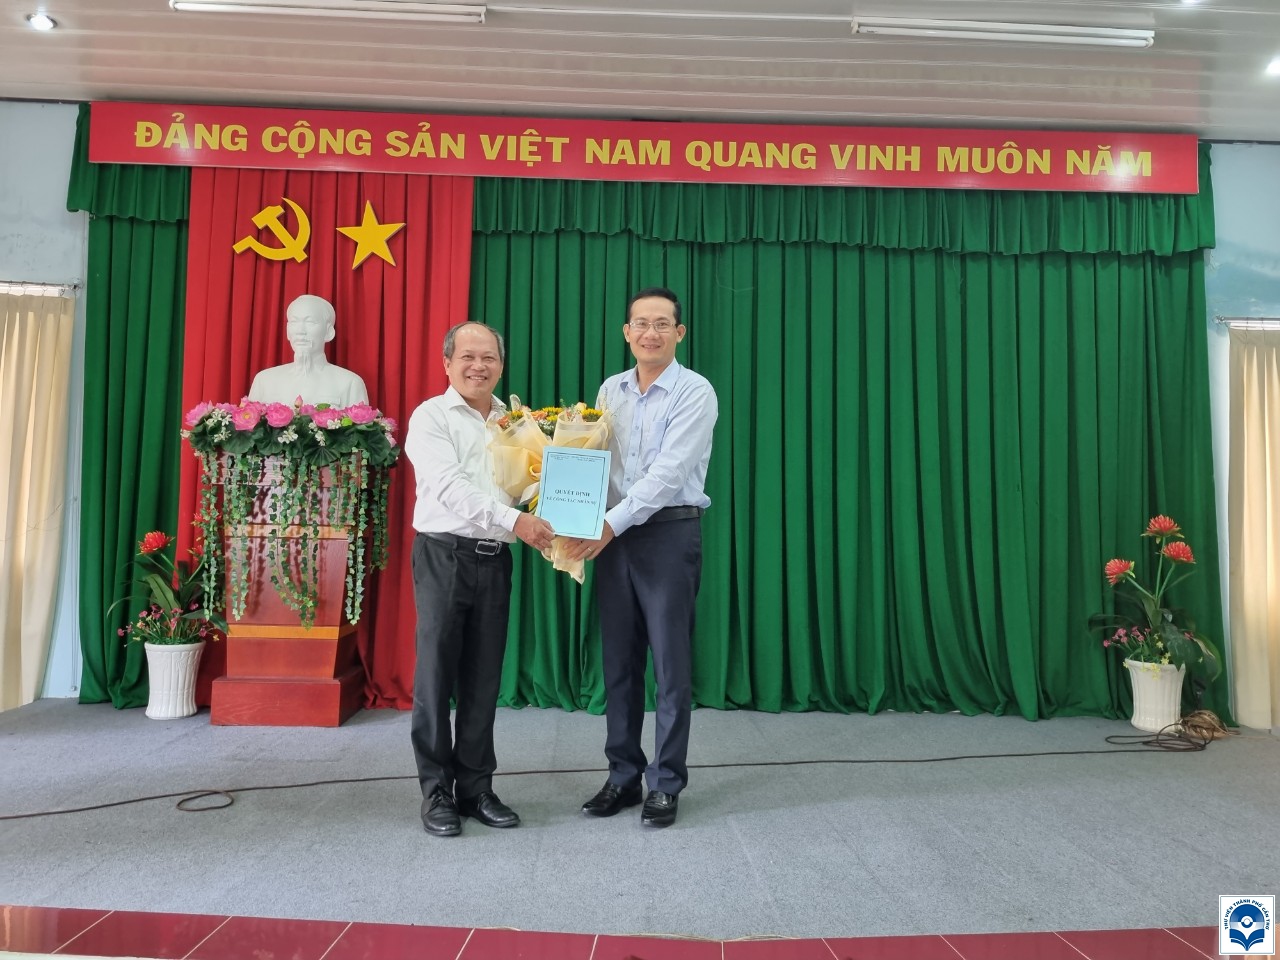 Ông Nguyễn Minh Tuấn - Giám đốc Sở VHTTDL TP Cần Thơ trao Quyết định bổ nhiệm ông Lê Thanh Bình giữ chức vụ Giám đốc Thư viện TP Cần Thơ.